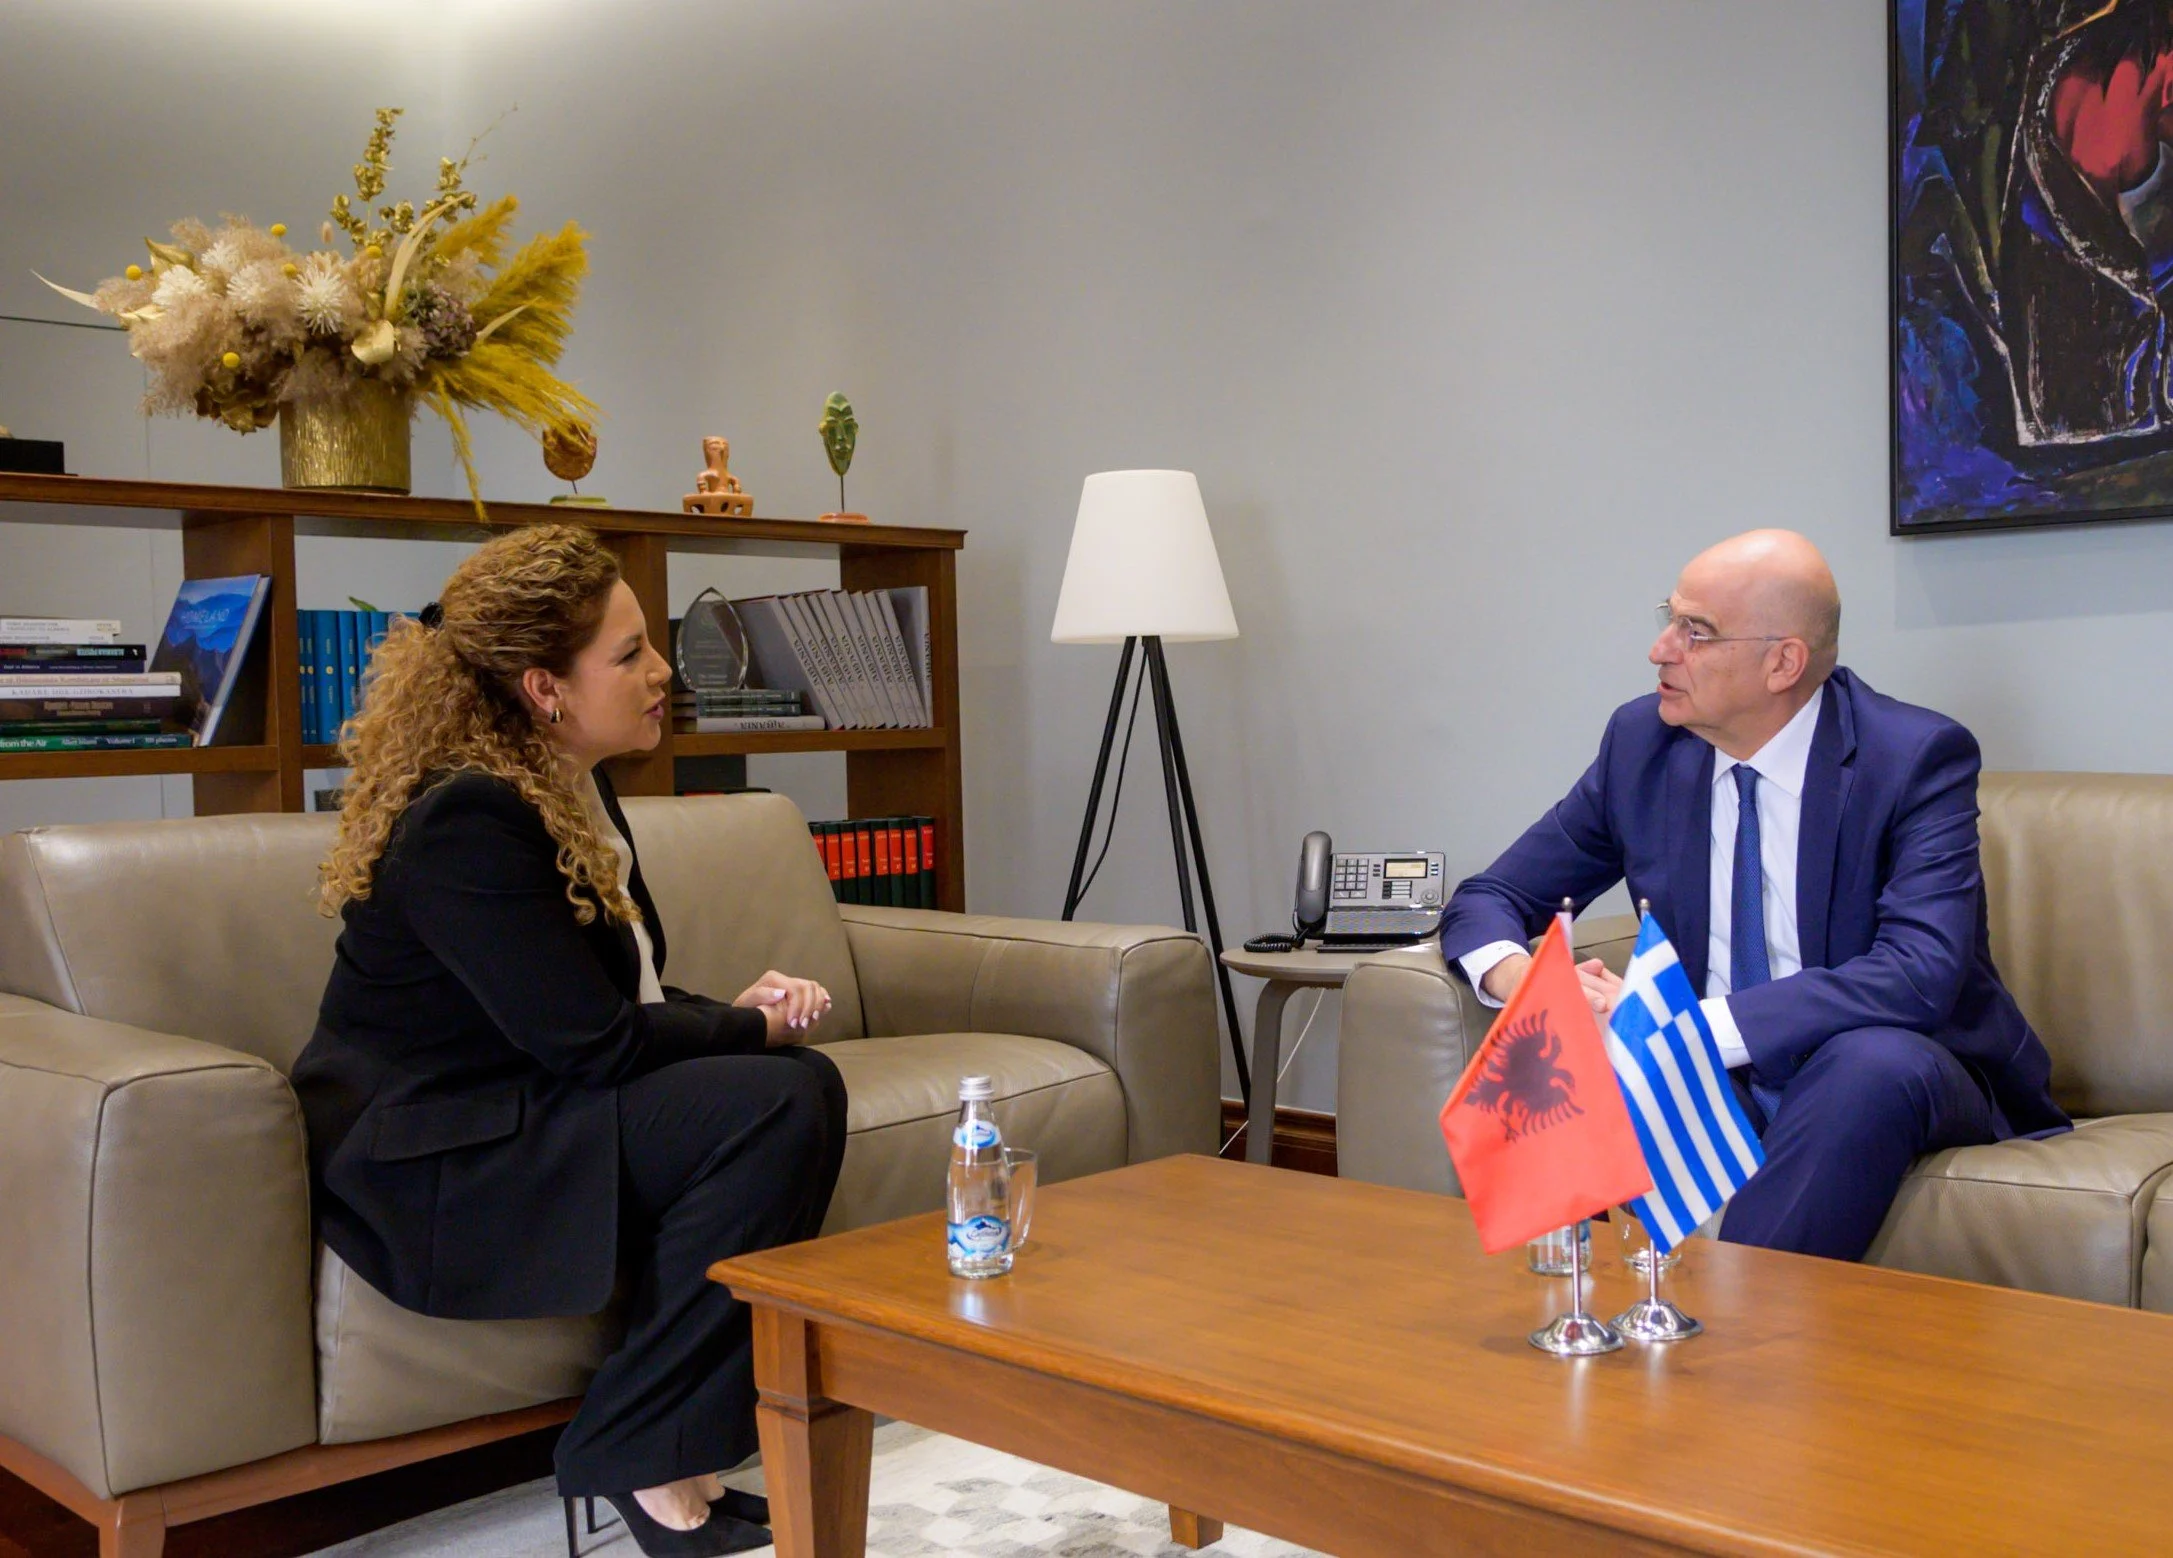 Greek Foreign Affairs Minister Nikos Dendia Albania's Minister for Europe & Foreign Affairs Olta Xhacka May 23, 2022.